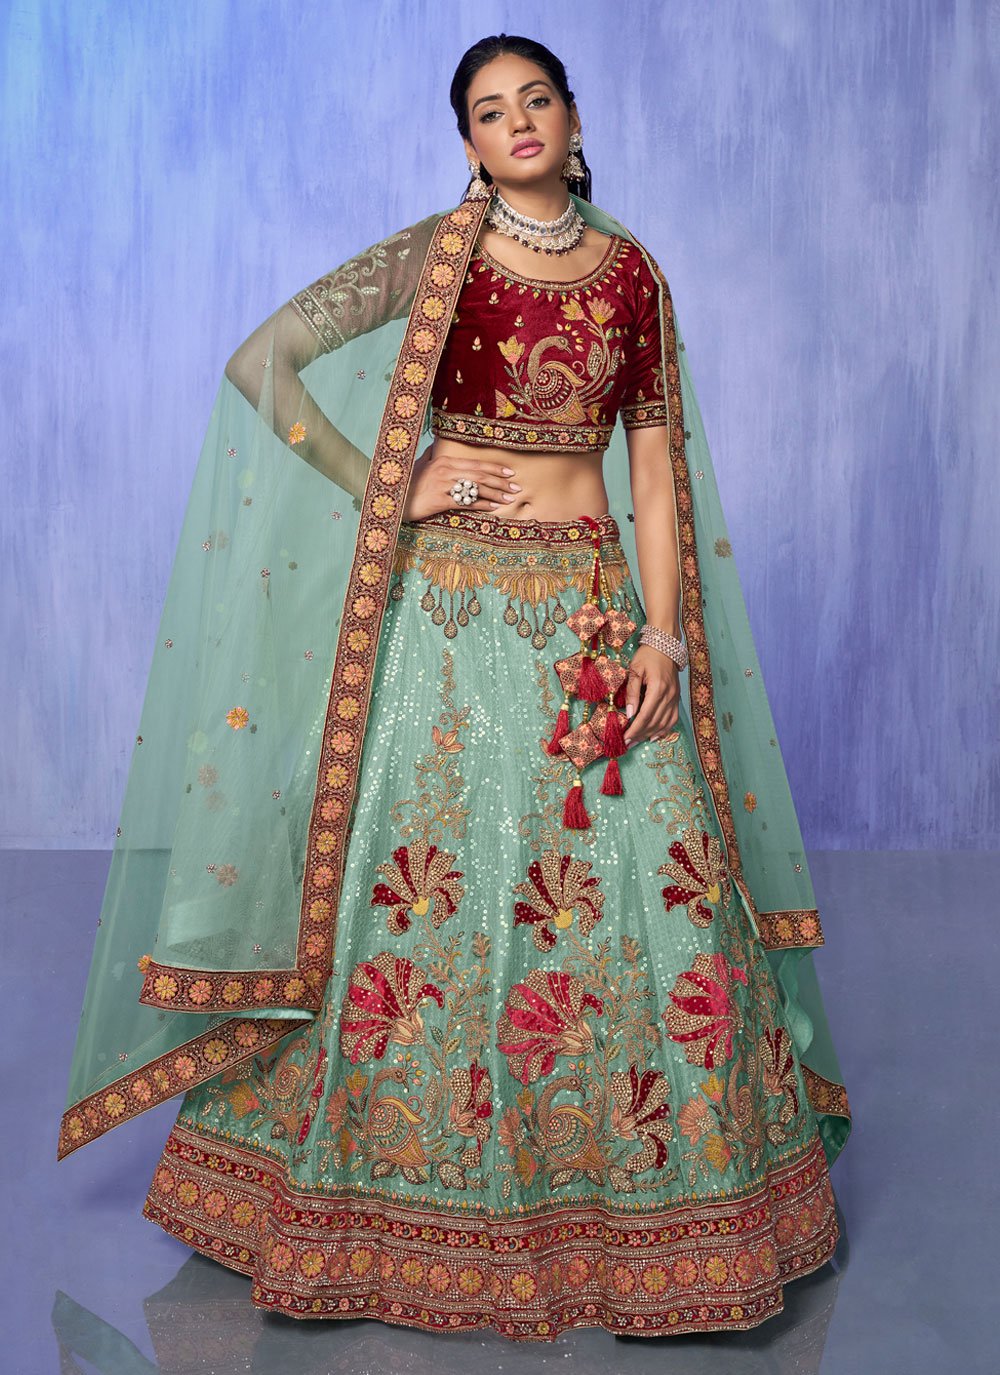 Designer Velvet Lehenga For Wedding in Rani color - Aazuri